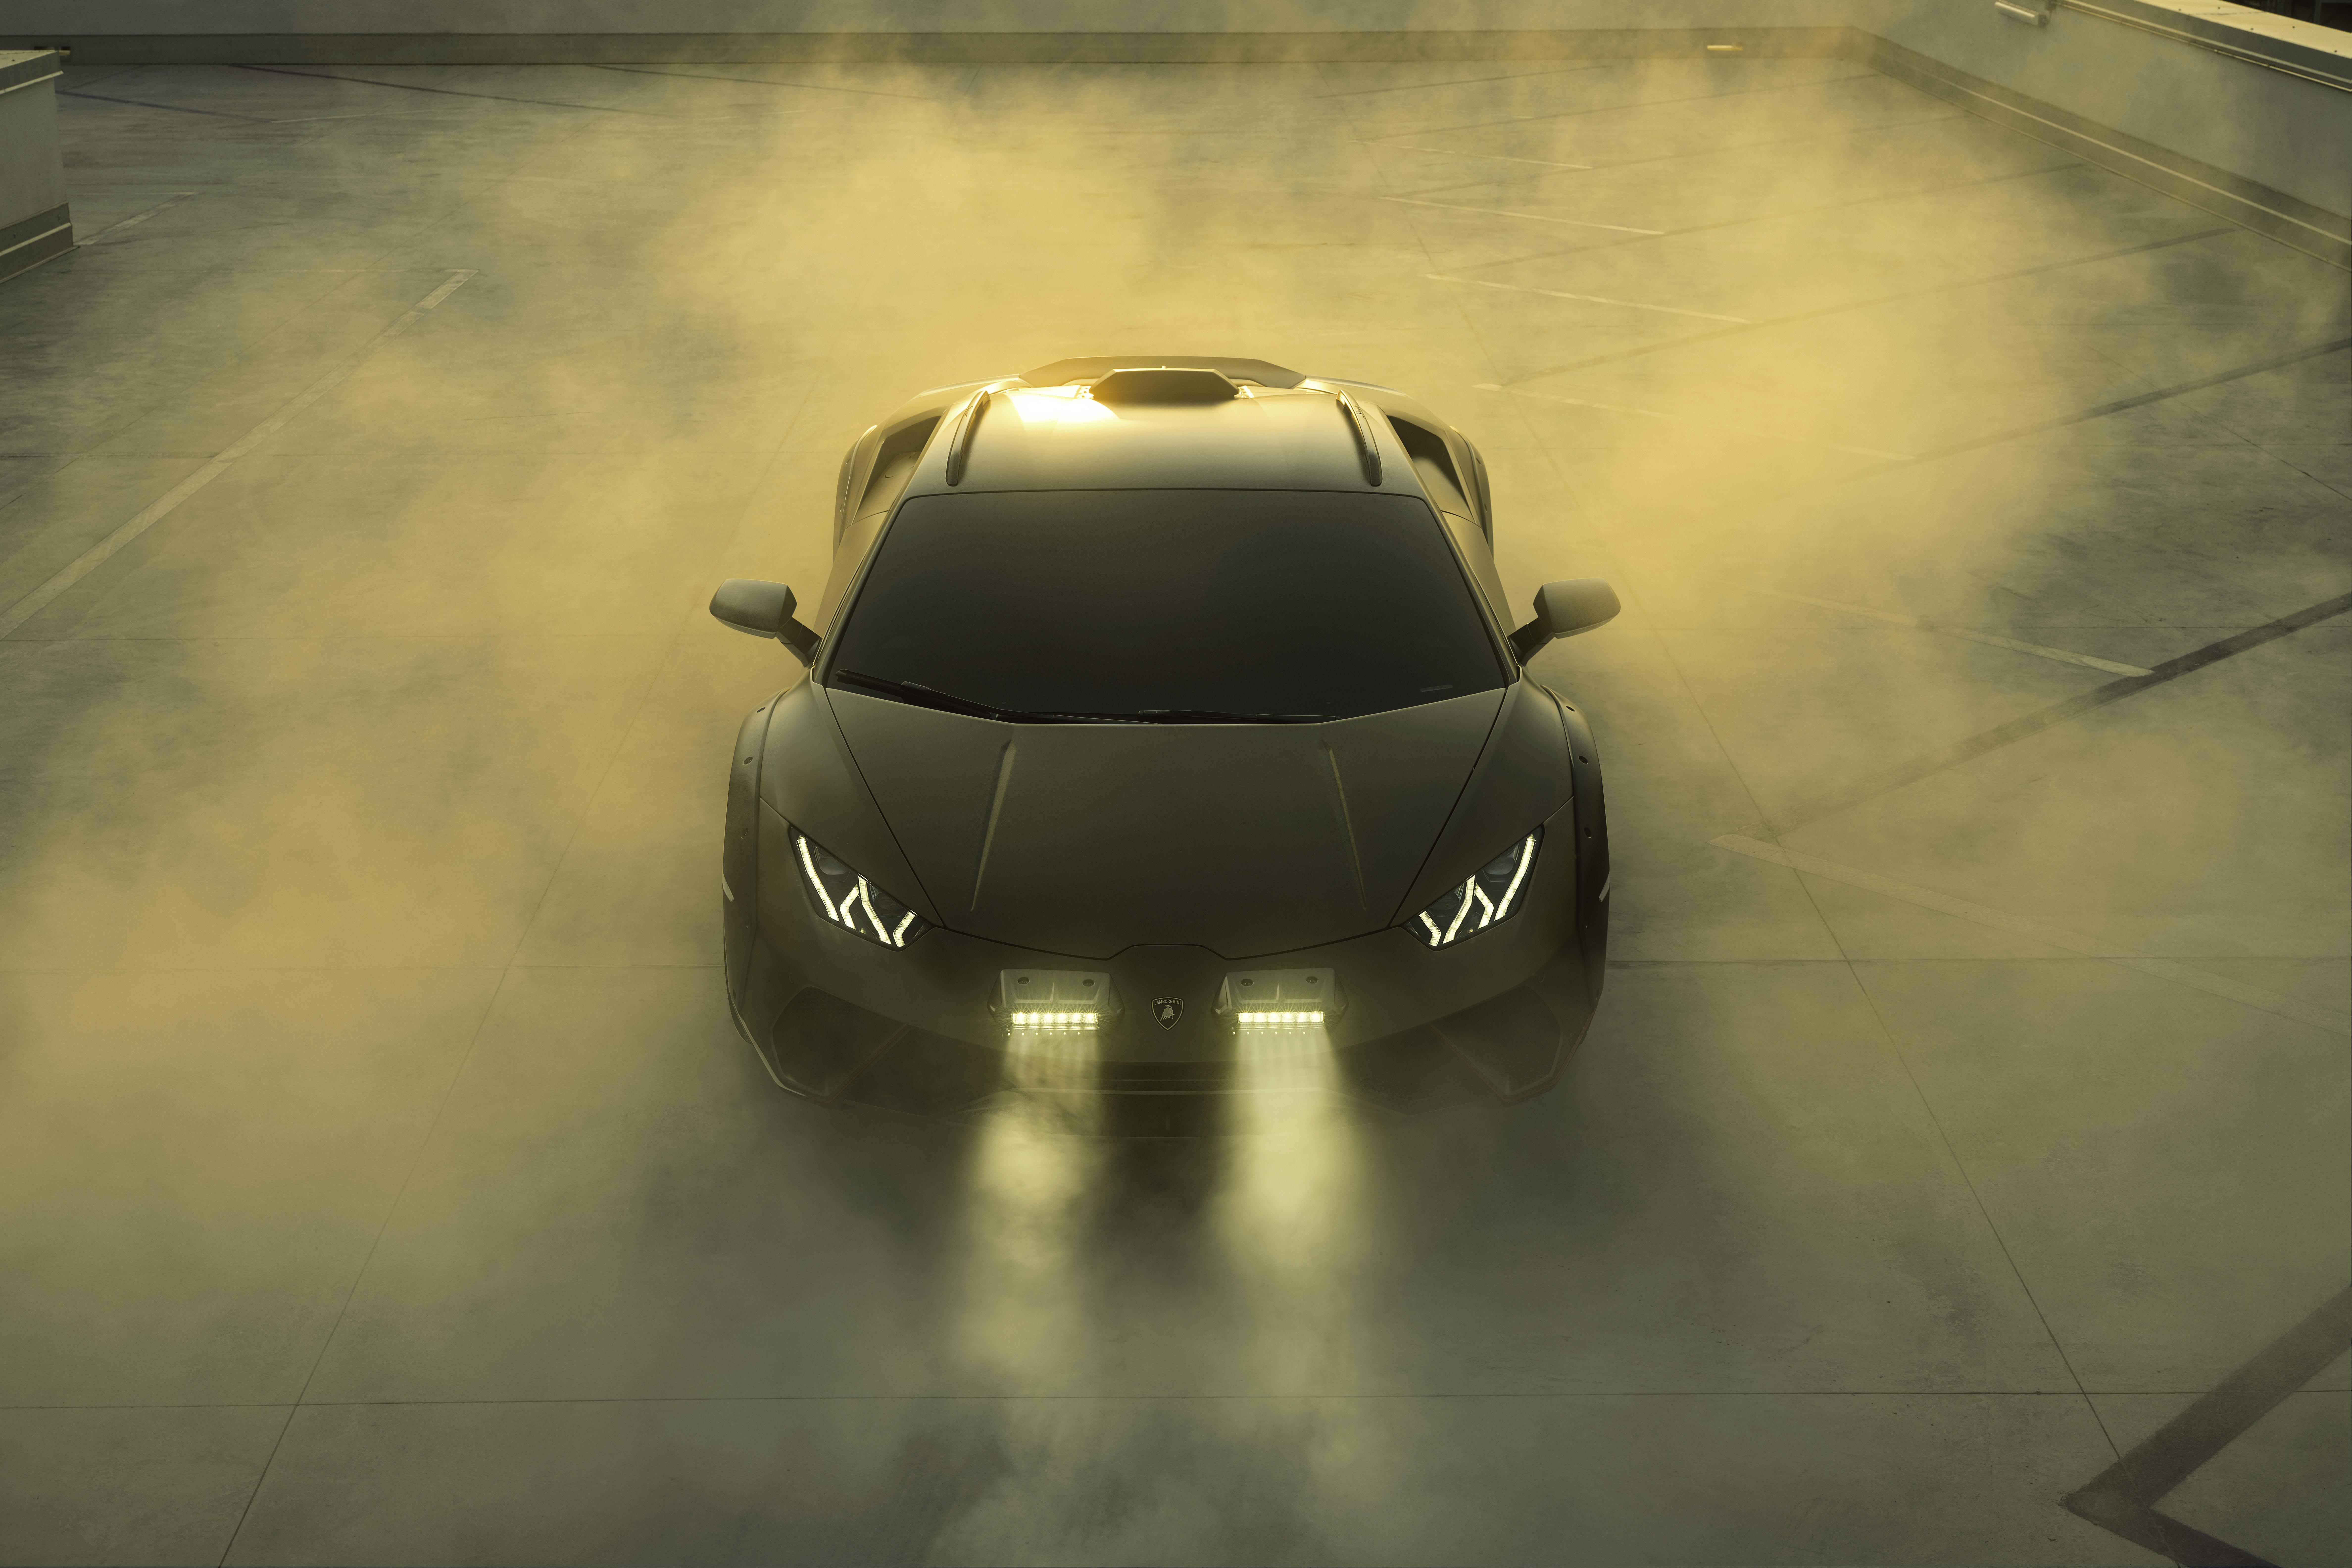 VW Tochter Lamborghini